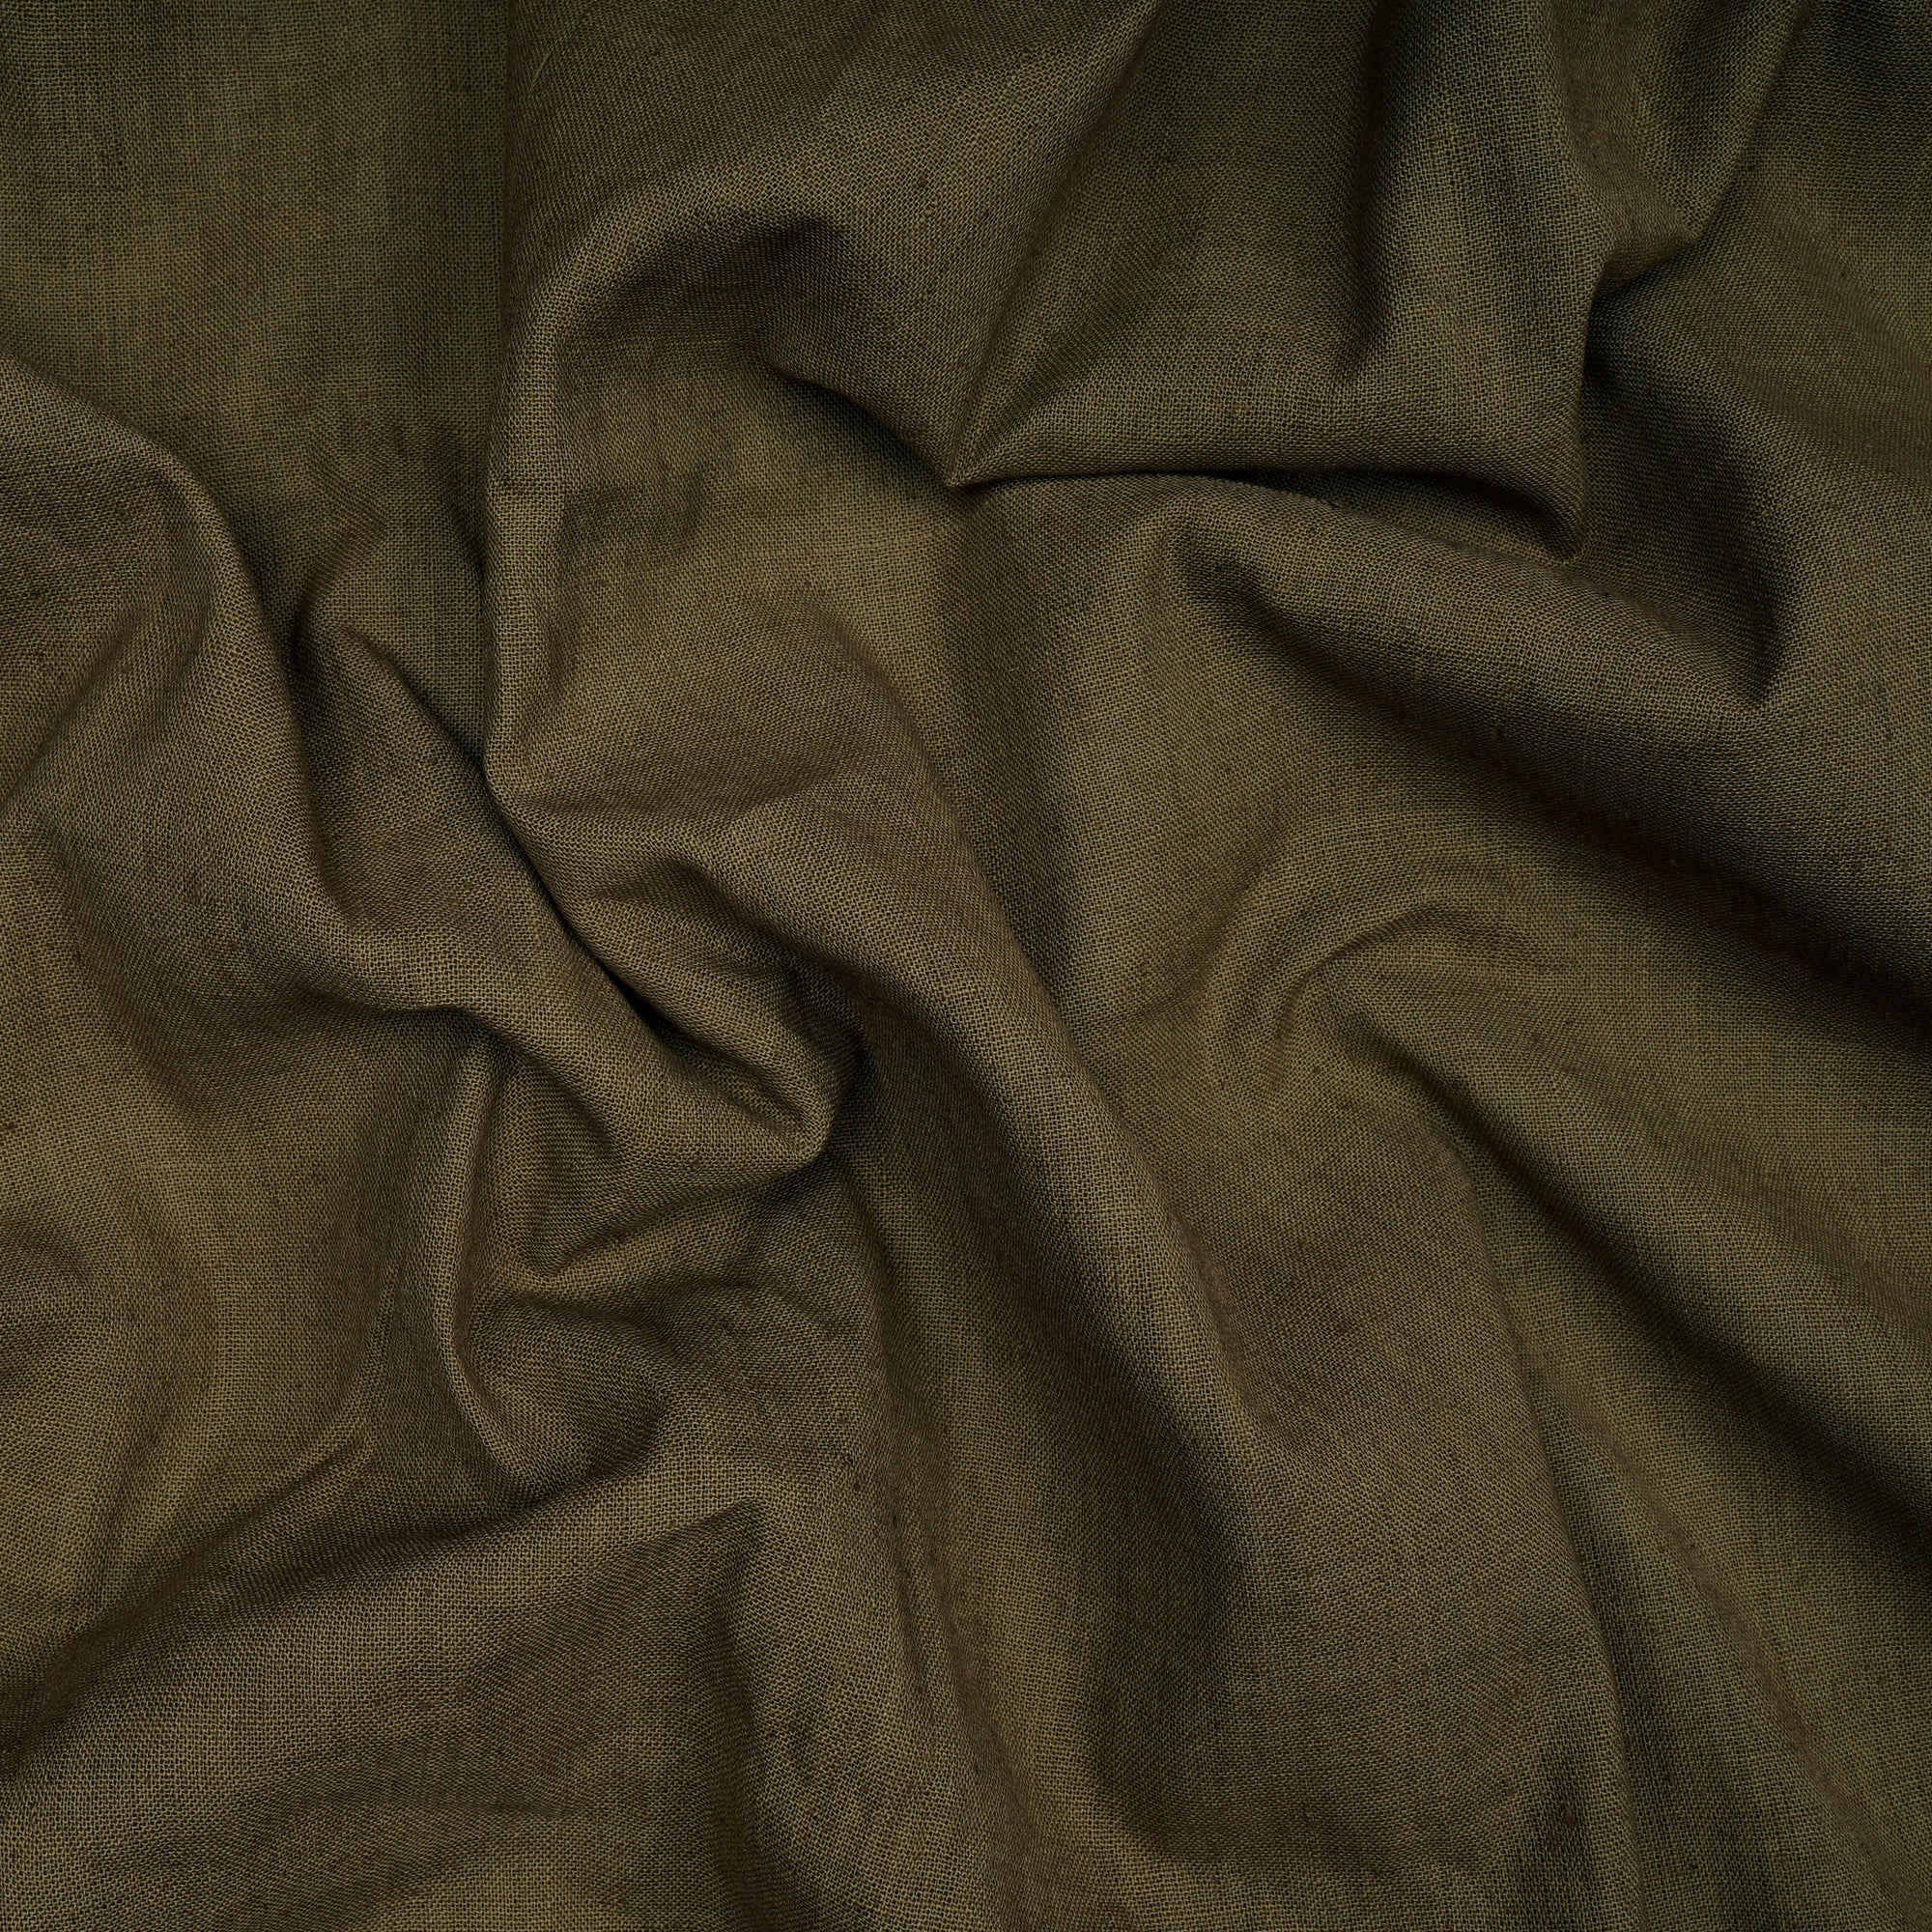 Fir Green 40's Count Piece Dyed Handspun Handwoven Cotton Fabric